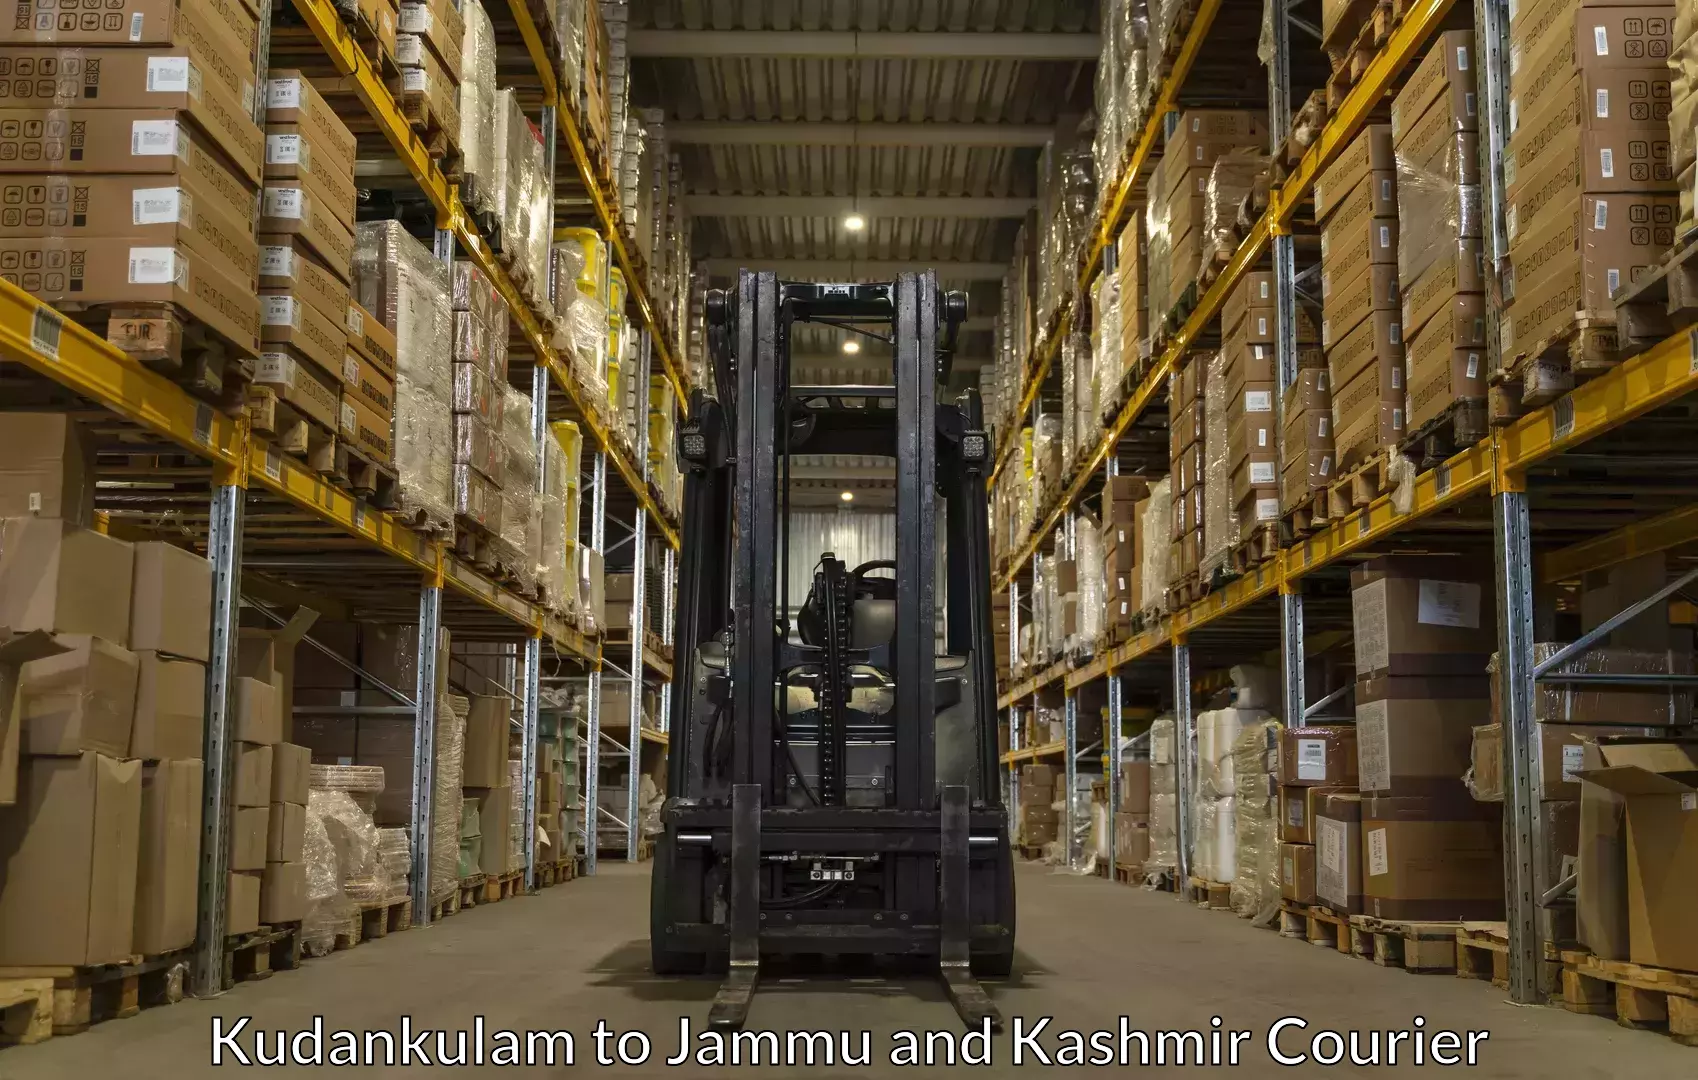 Luggage shipping specialists Kudankulam to Baramulla